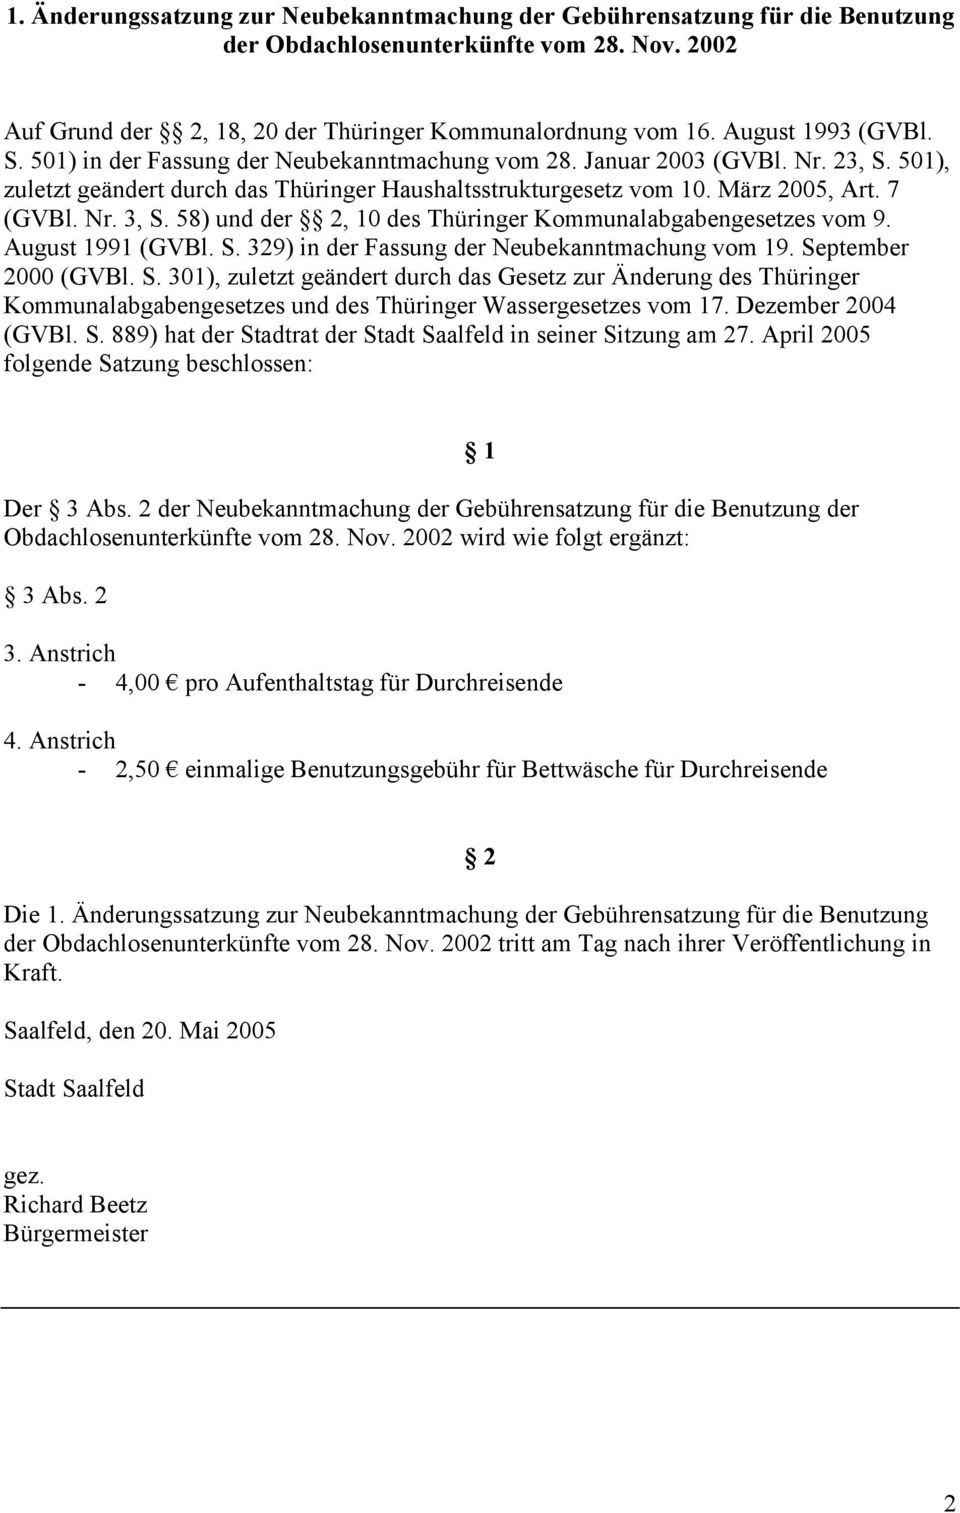 7 (GVBl. Nr. 3, S. 58) und der 2, 10 des Thüringer Kommunalabgabengesetzes vom 9. August 1991 (GVBl. S. 329) in der Fassung der Neubekanntmachung vom 19. September 2000 (GVBl. S. 301), zuletzt geändert durch das Gesetz zur Änderung des Thüringer Kommunalabgabengesetzes und des Thüringer Wassergesetzes vom 17.